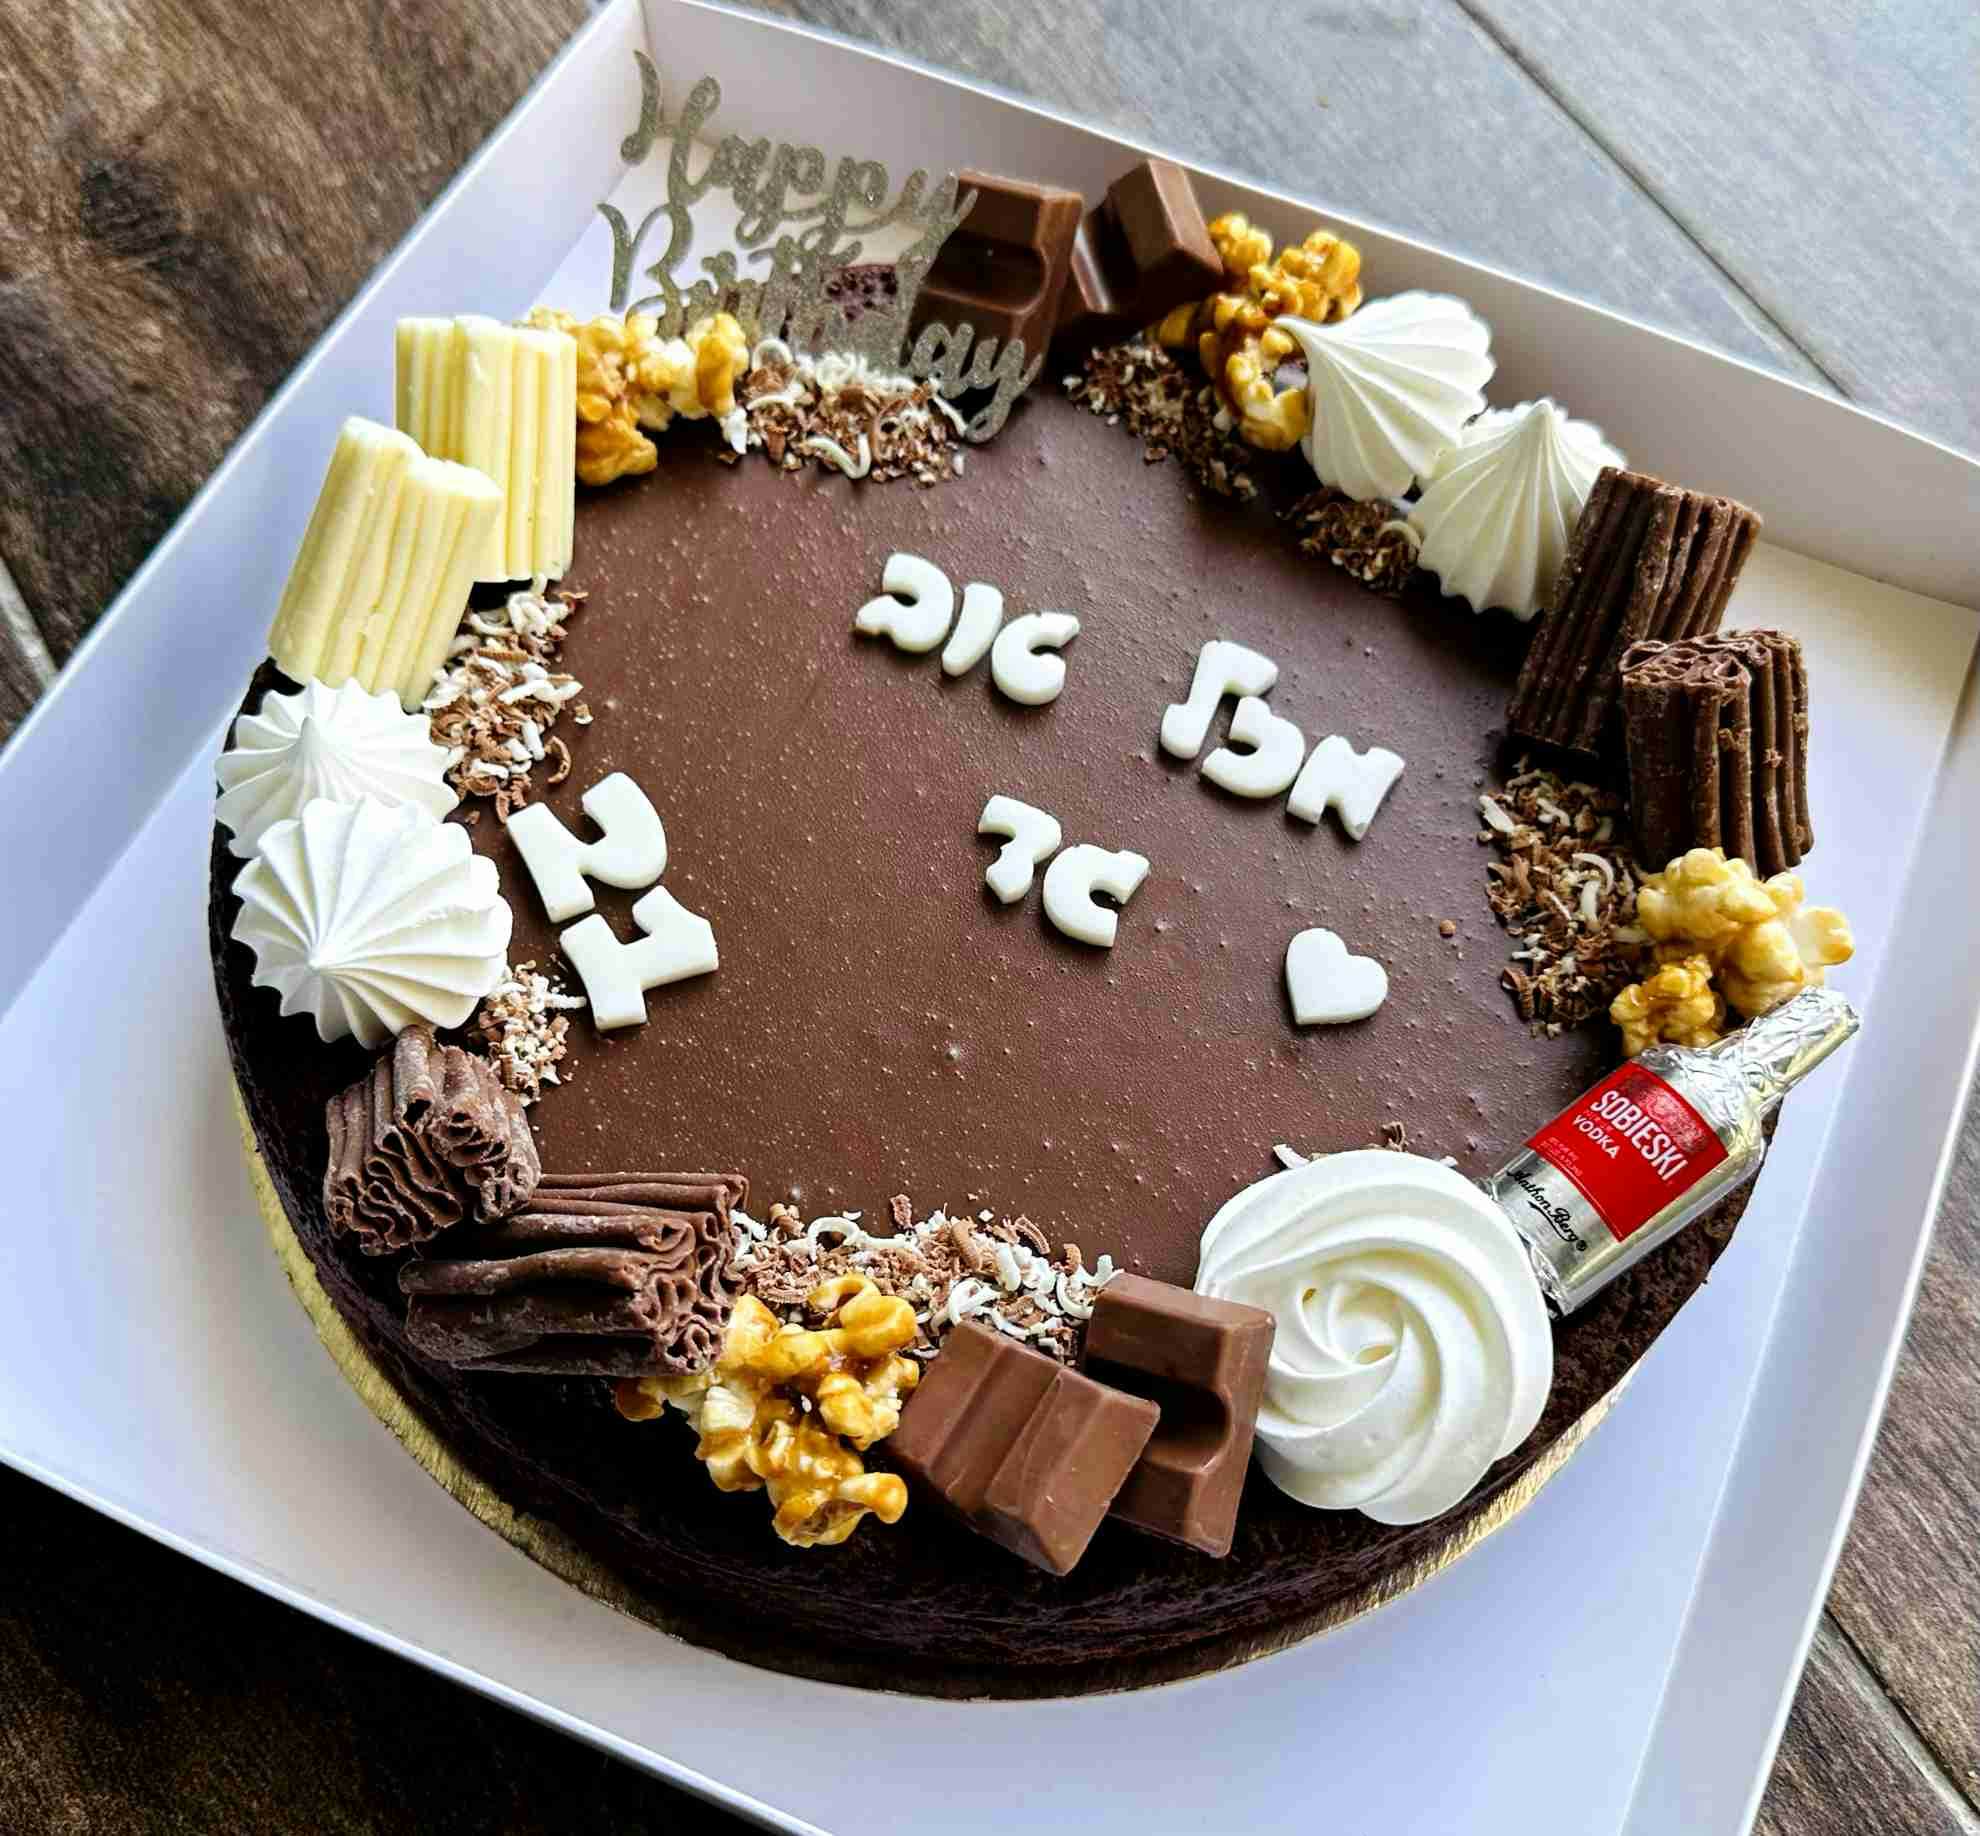 עוגת פאדג׳ עסיסית ושוקולדית
ללא קמח **מכילה שקדים
עם גנאש שוקולד בלגי
קישוטי שוקולד ופינוקים